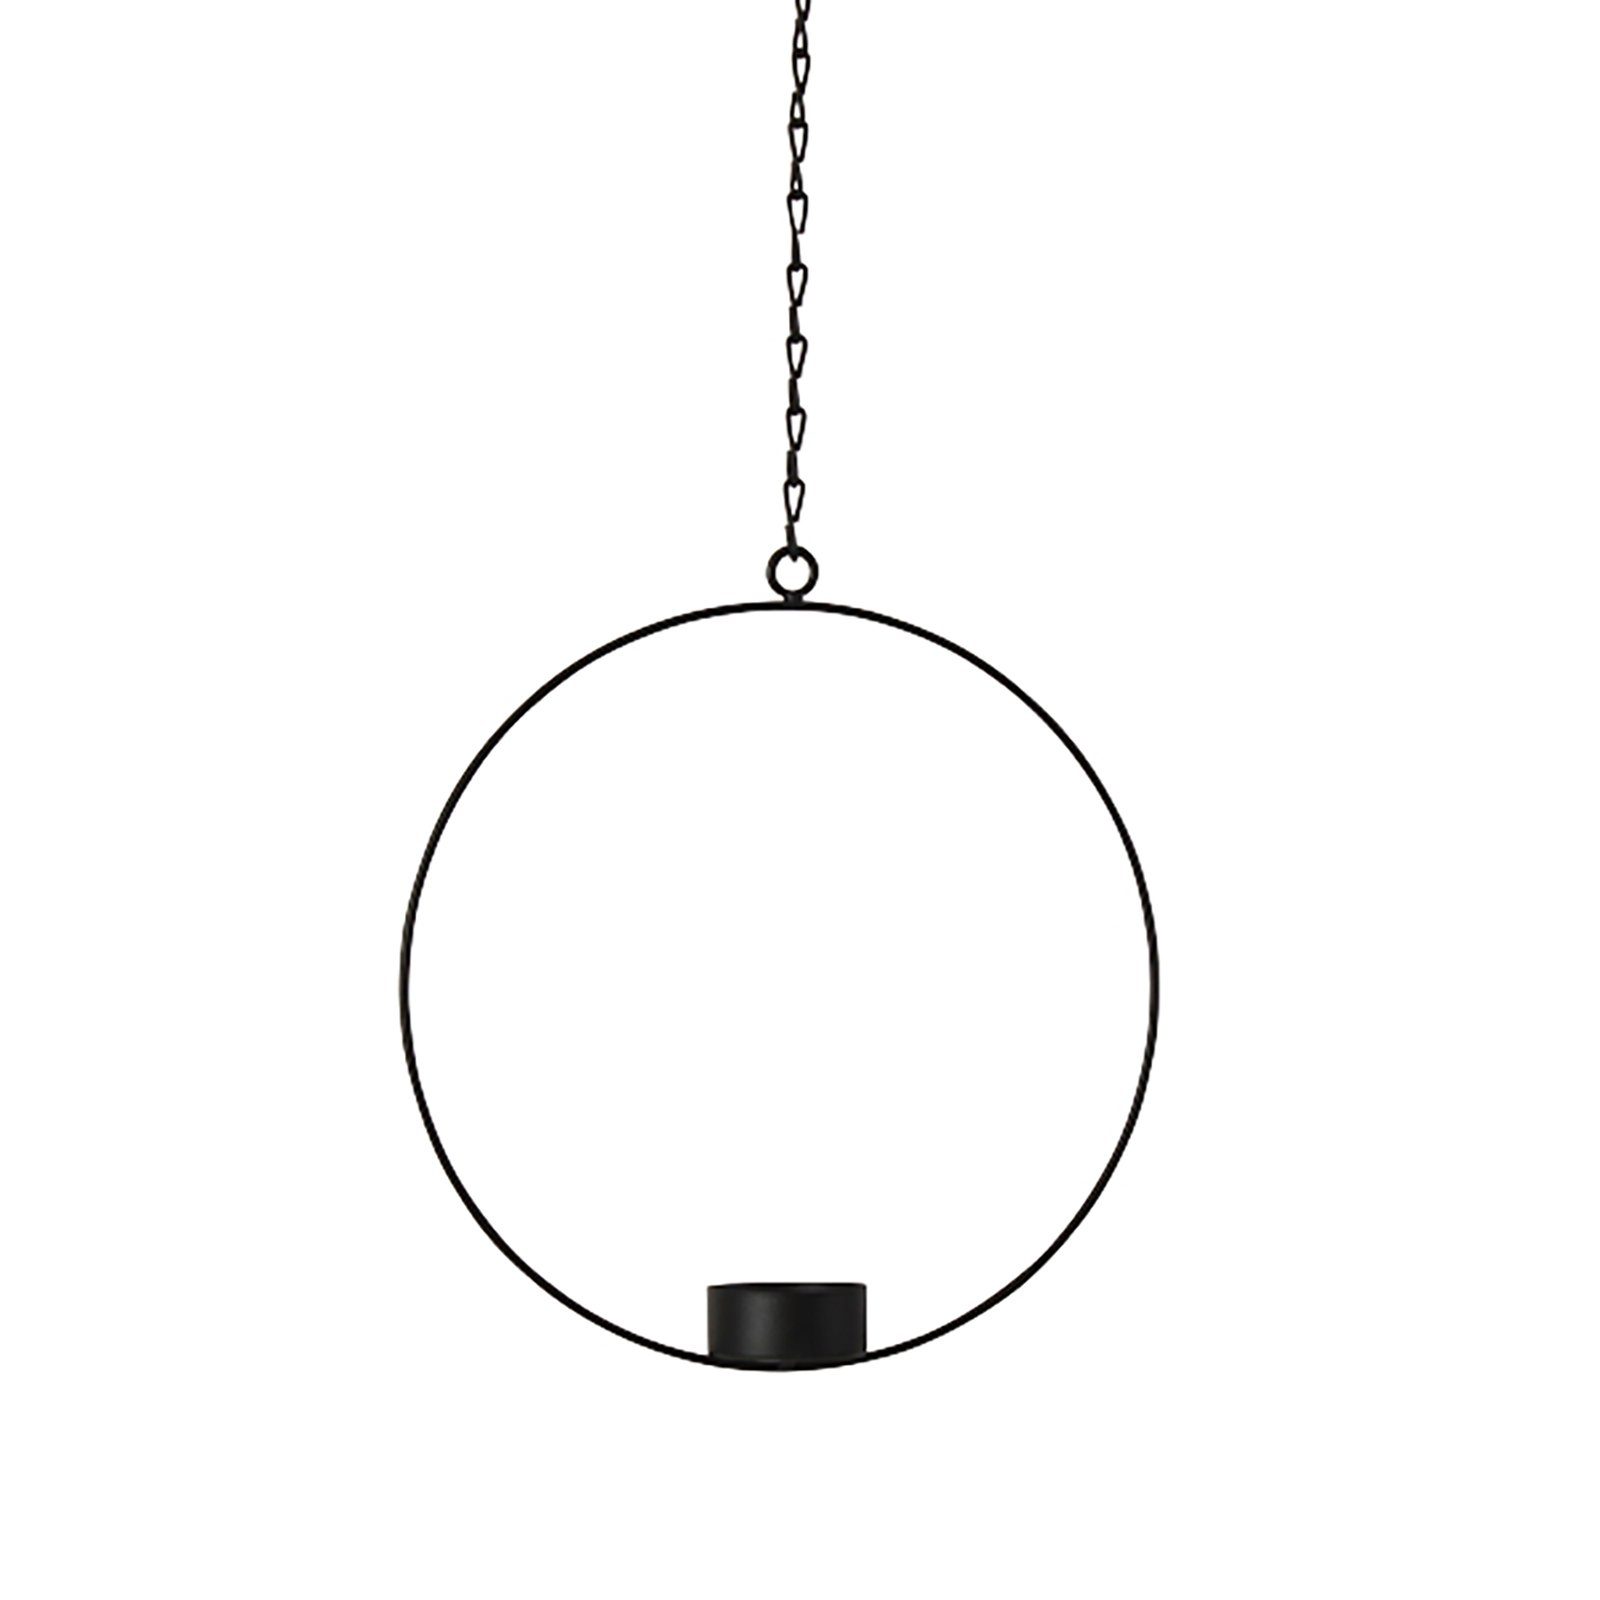 Werner Voß Wanddekoobjekt Deko-Ring m. Teelichteinsatz, schwarz, Metall - Durchmesser 20 cm, Kette 25 cm